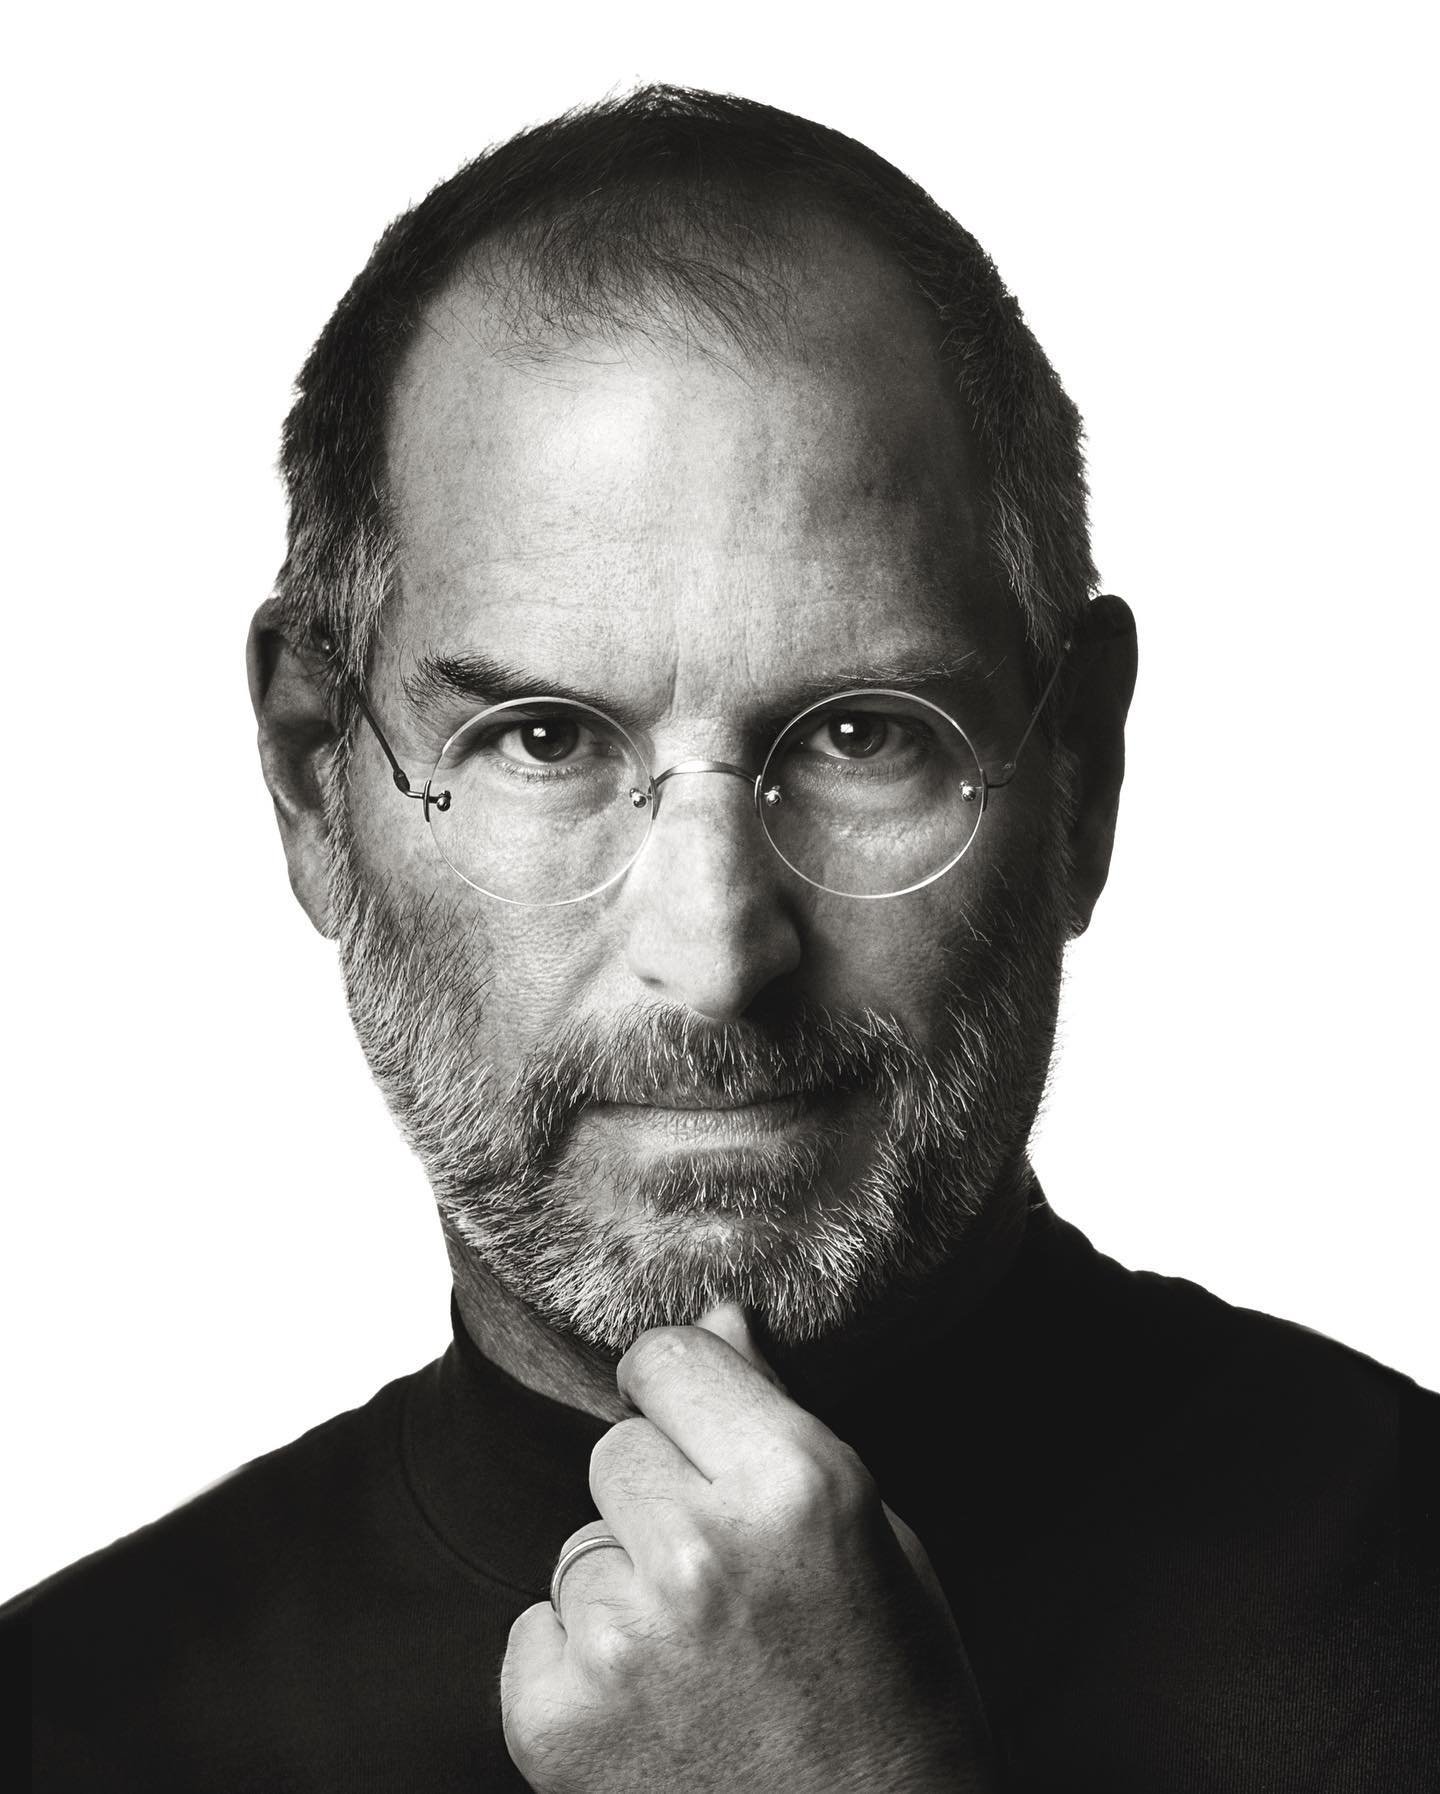  Steve Jobs 